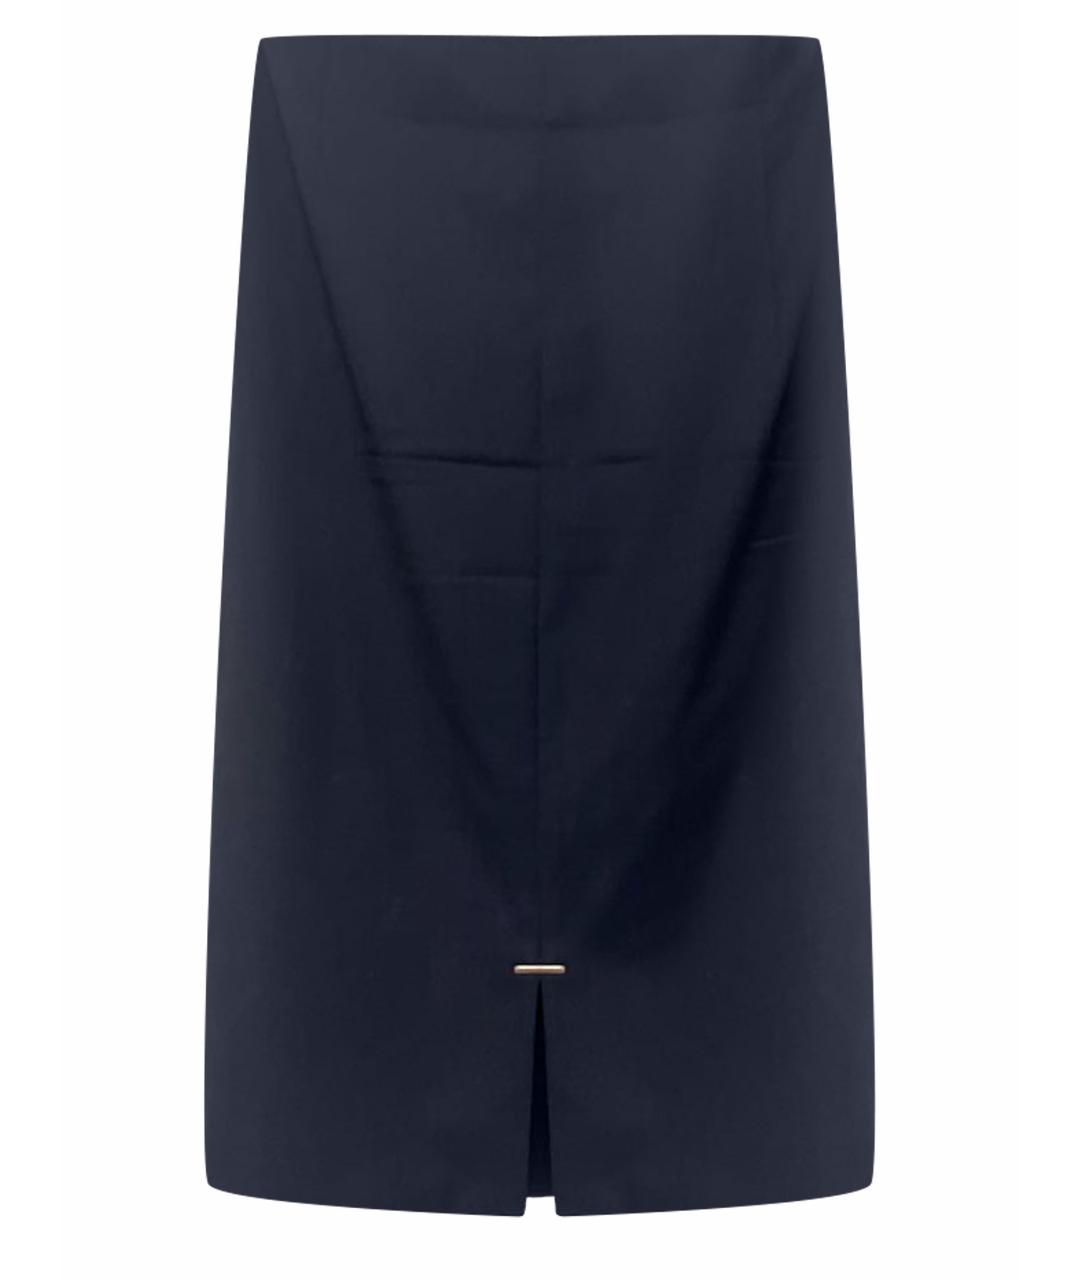 HUGO BOSS Темно-синяя шерстяная юбка миди, фото 1